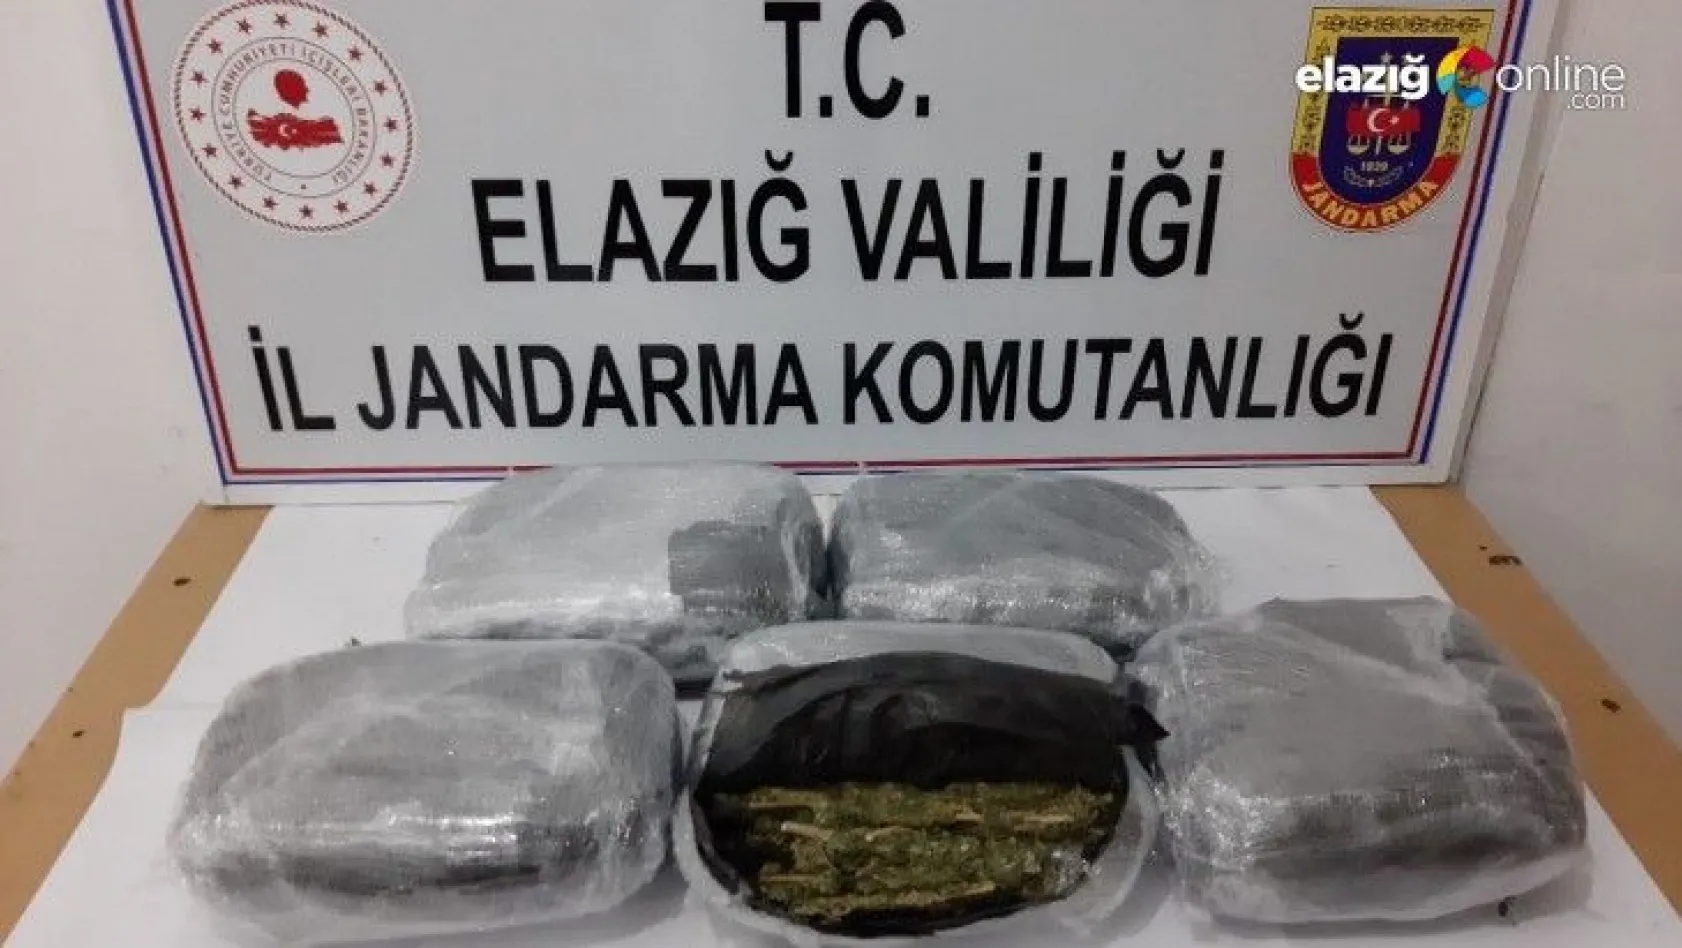 Ankara'ya gönderildiği öğrenilen 12 kilogram esrar ele geçirildi